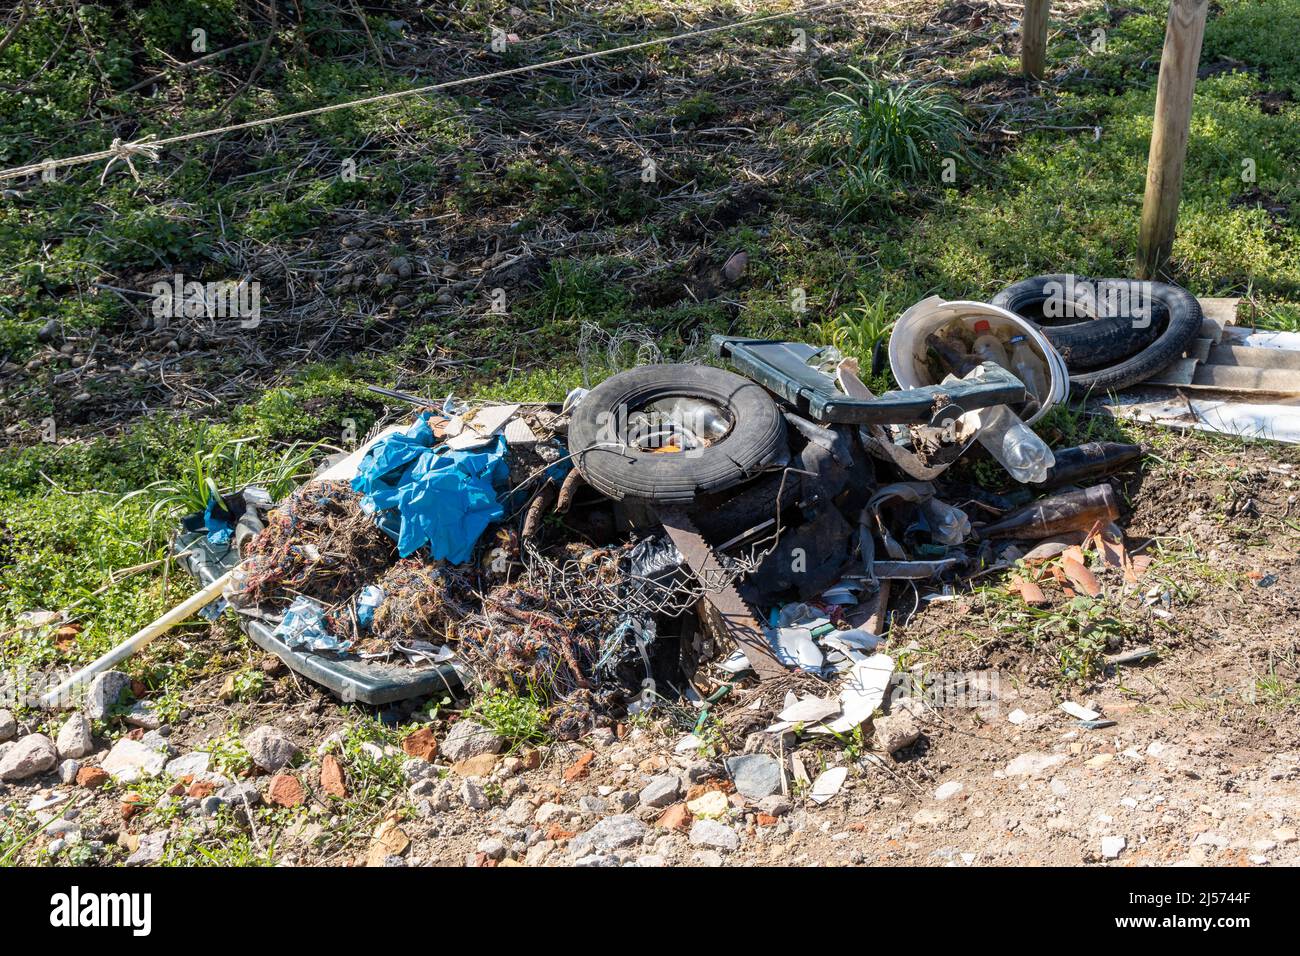 deposito illegale di rifiuti in natura, vecchi pneumatici , bottiglie e plastica, inquinamento ambientale Foto Stock